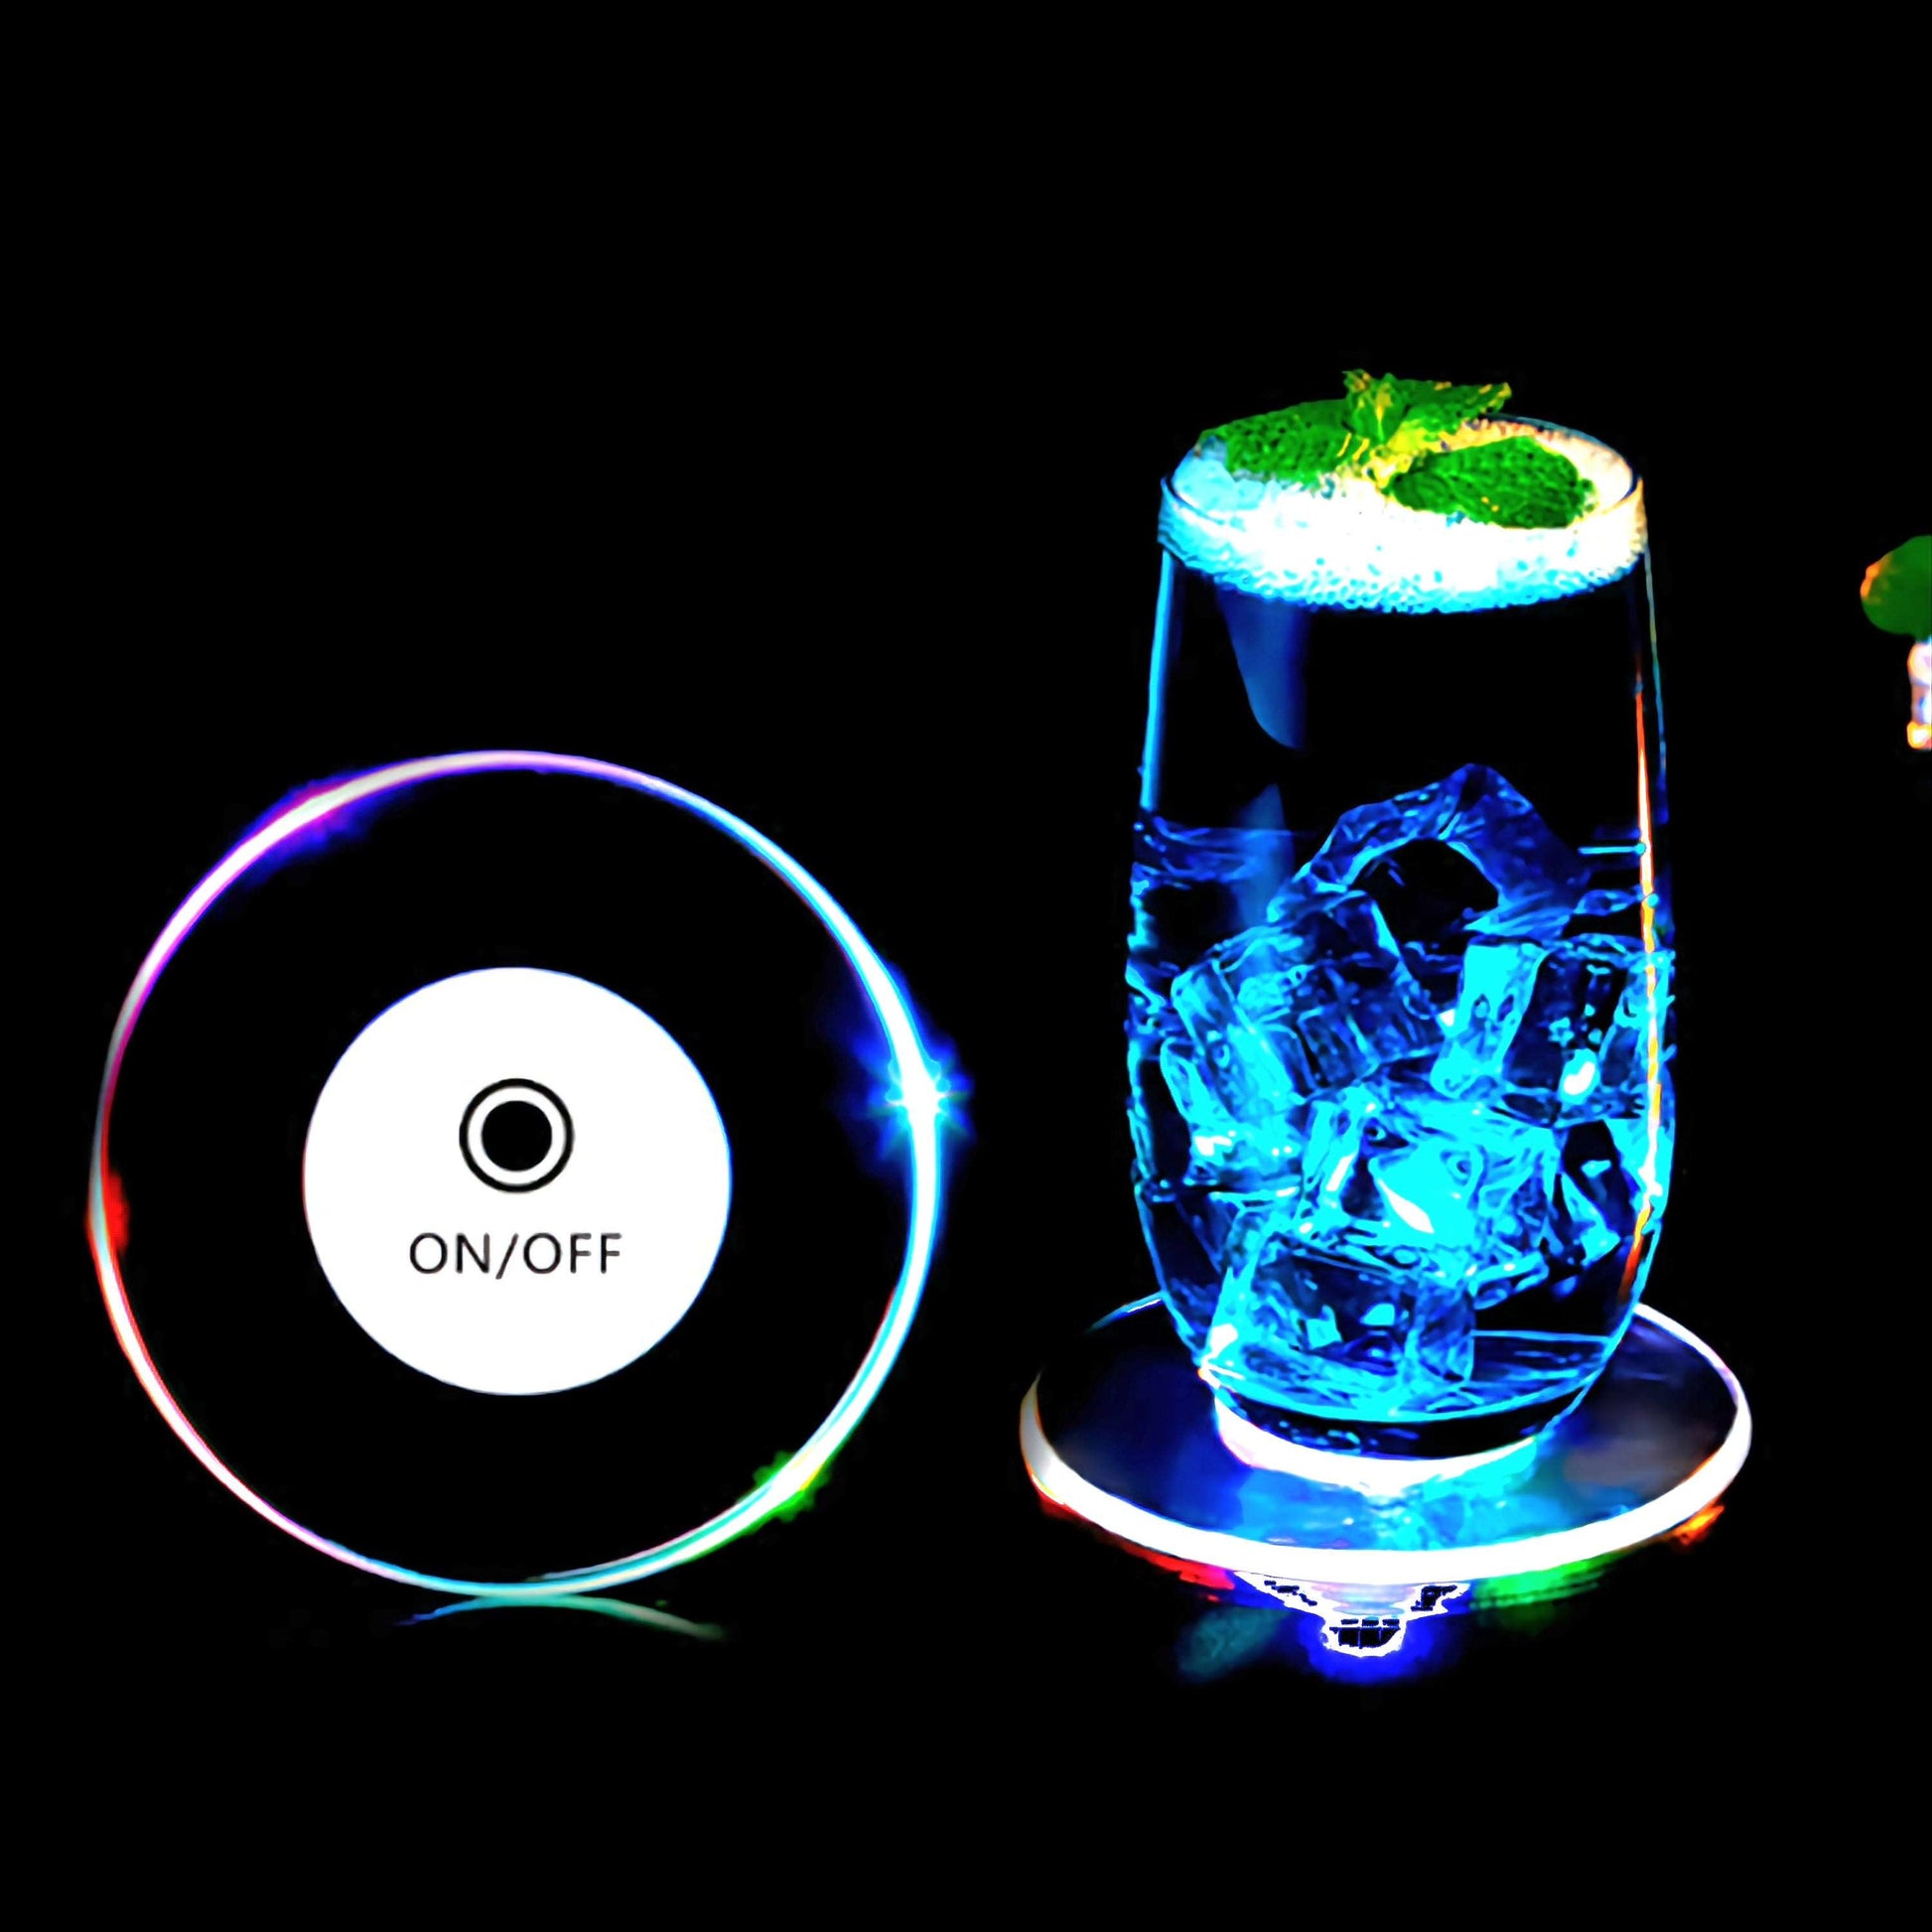 LED Glow Coaster Acrylic Crystal Emitting Luminous Bar Cocktail Mug Stand Light Coasters Flashing Base Tableware Decoration Pads at acheckbox